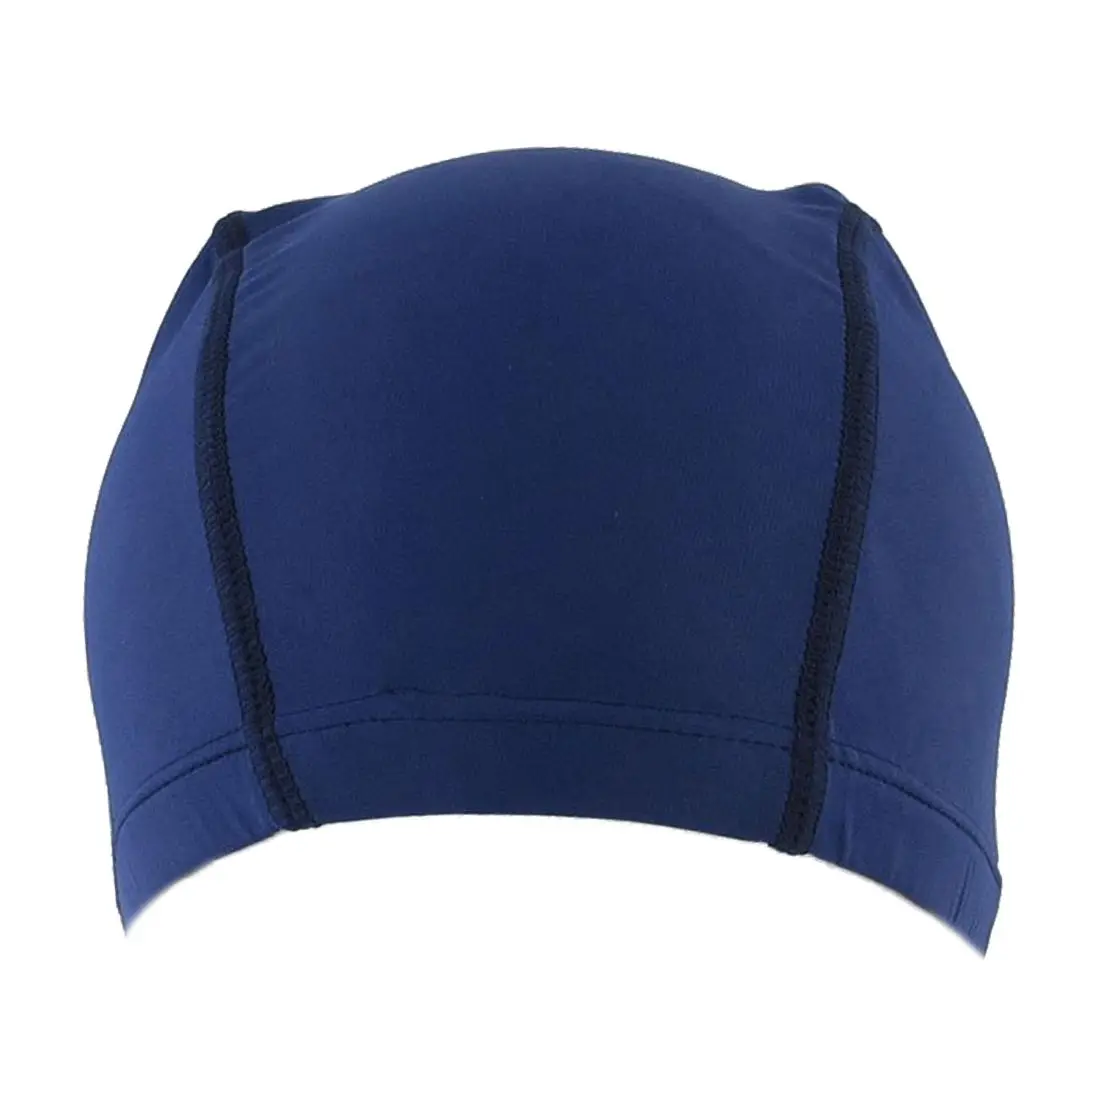 Полиэстер для мужчин и женщин спортивная гибкая ткань плавать ming cap шапочка для бассейна синий